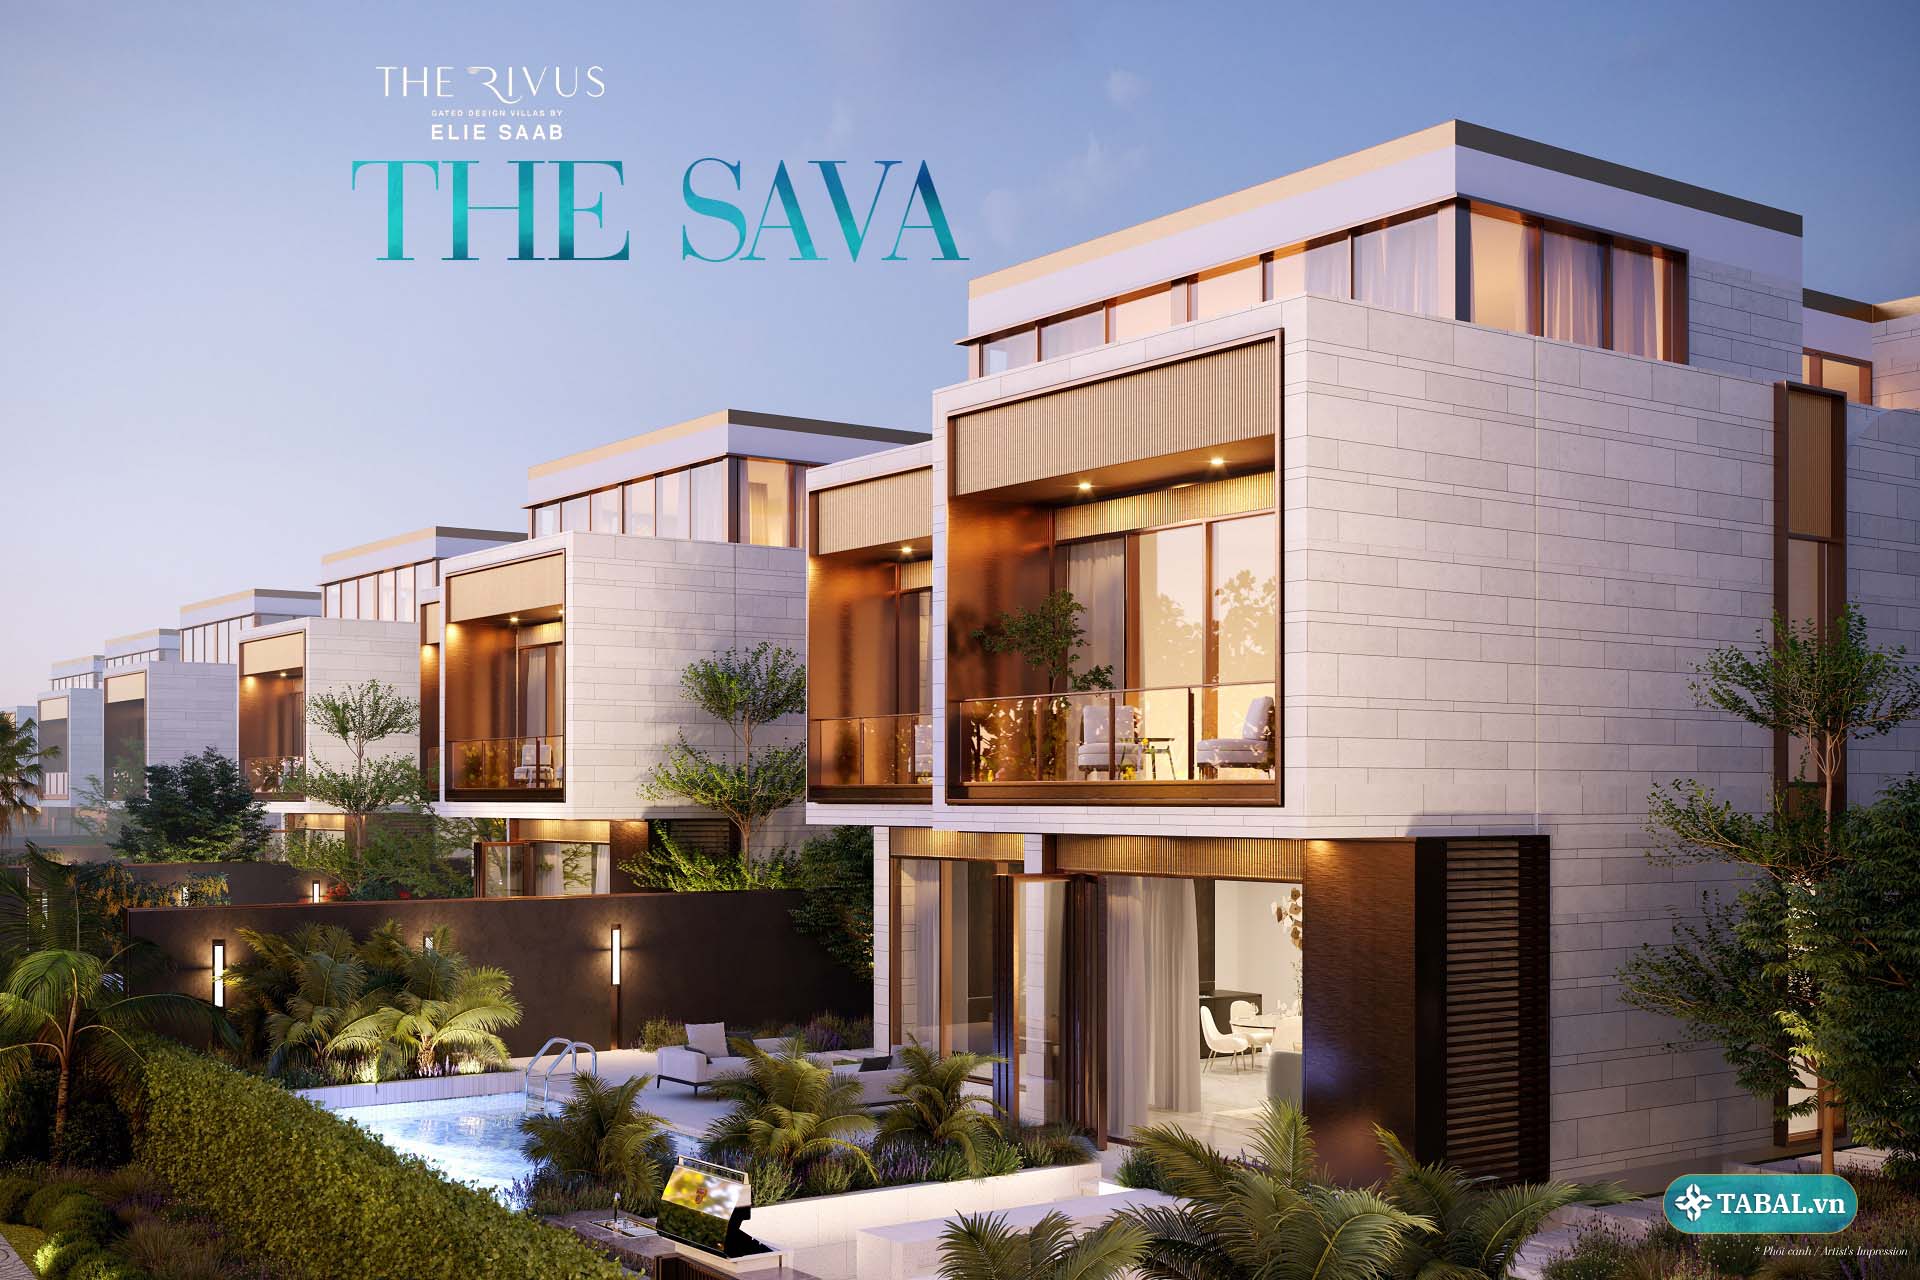 THE SAVA - Bộ sưu tập dinh thự hàng hiệu ELIE SAAB